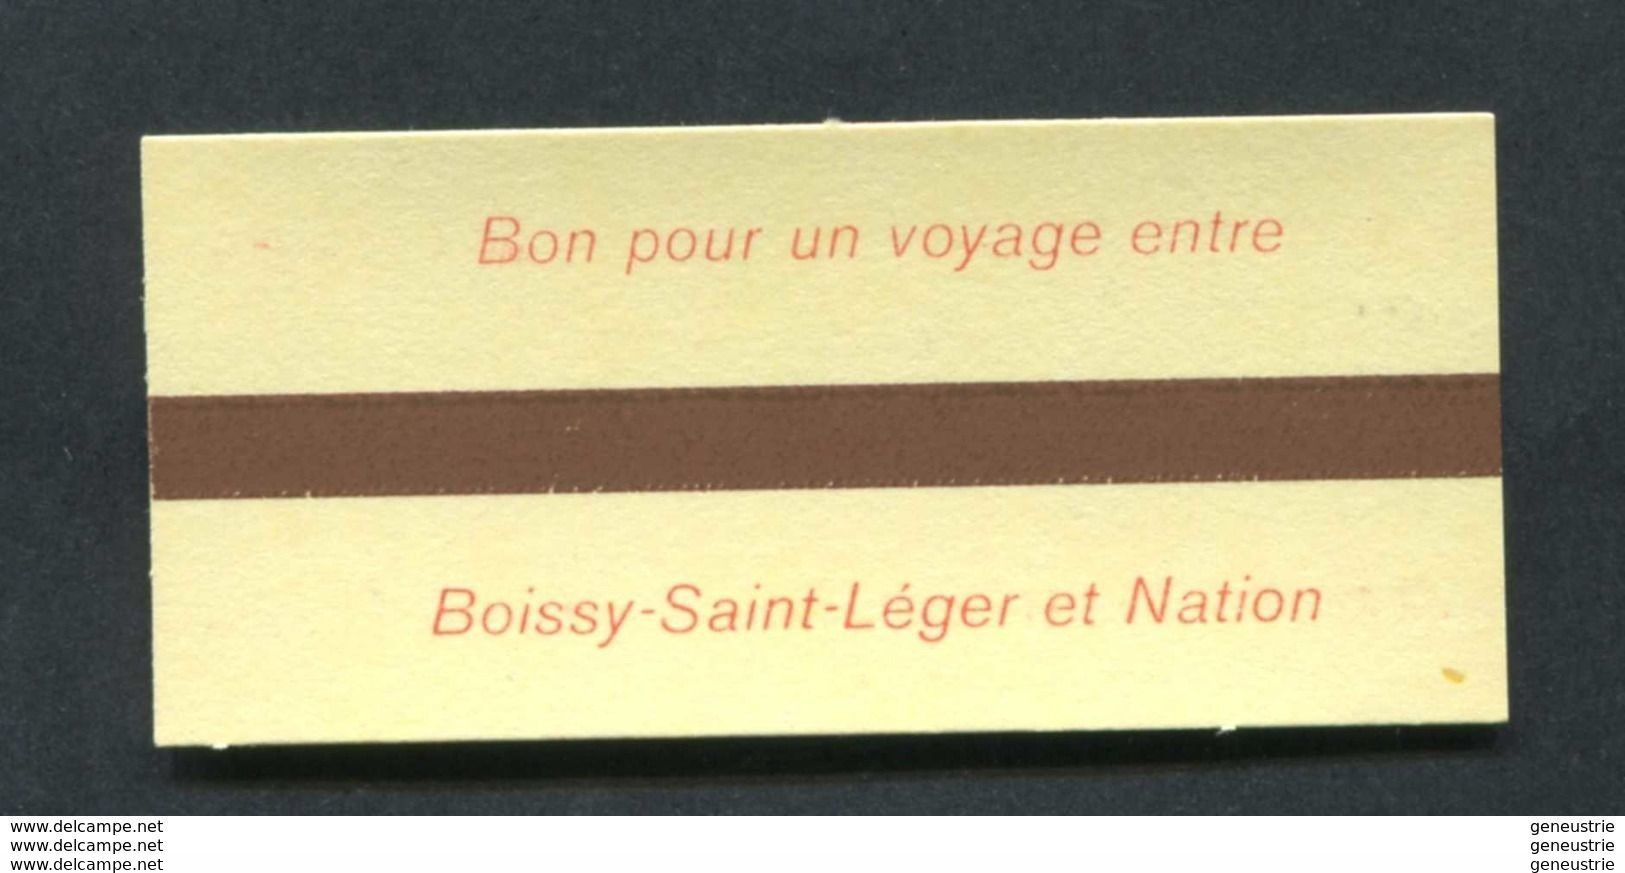 Ticket Neuf De Métro / RER - SNCF / RATP Pour Le Personnel SNCF (1ère Classe Boissy Saint Leger / Paris Nation) - Europe